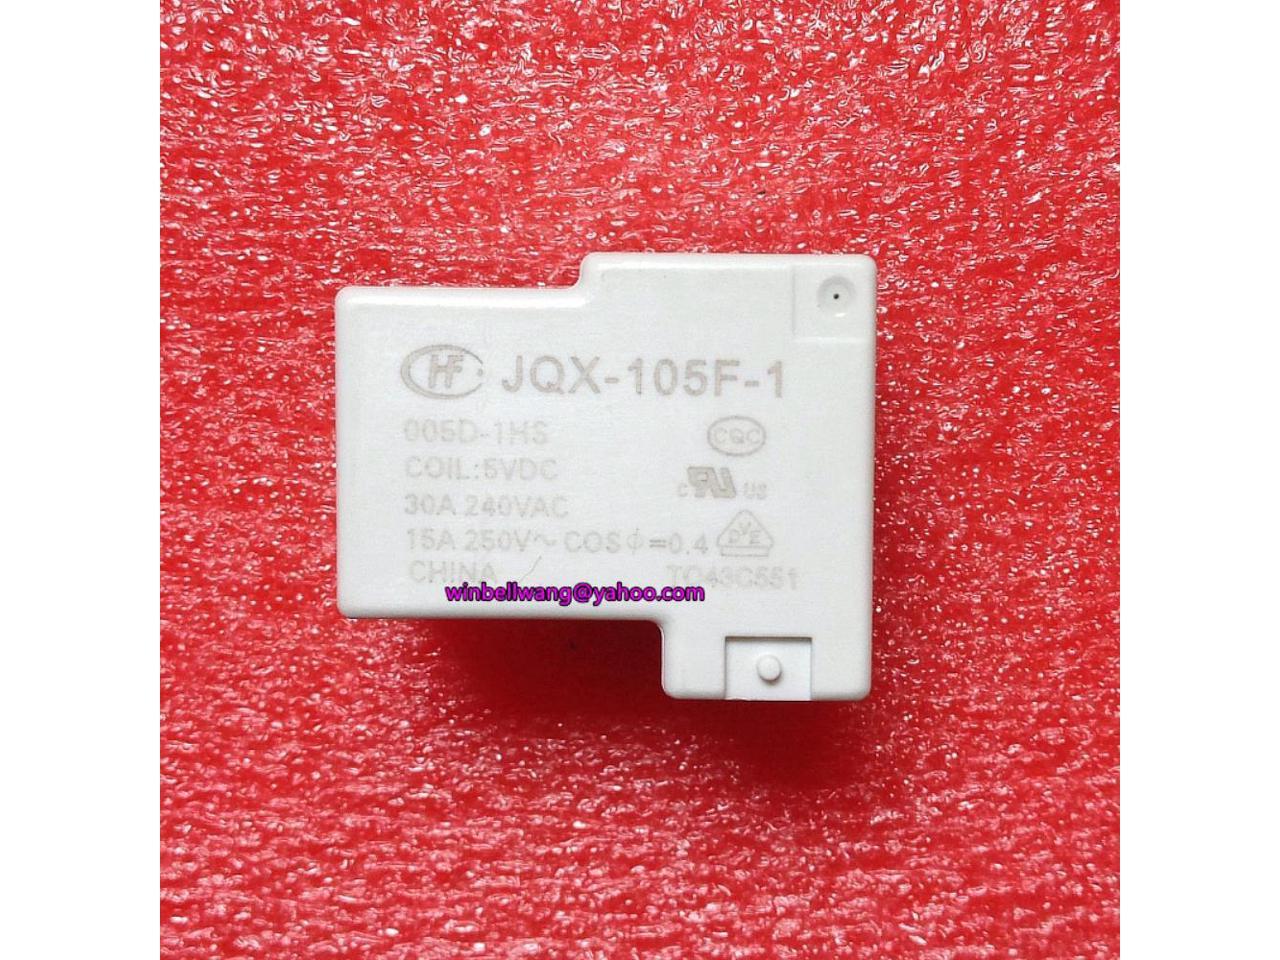 10PCS JQX-105F-1-005D-1HS HF105F-1-005D-1HS 5VDC 30A ORIGINAL Relay 4PINS 